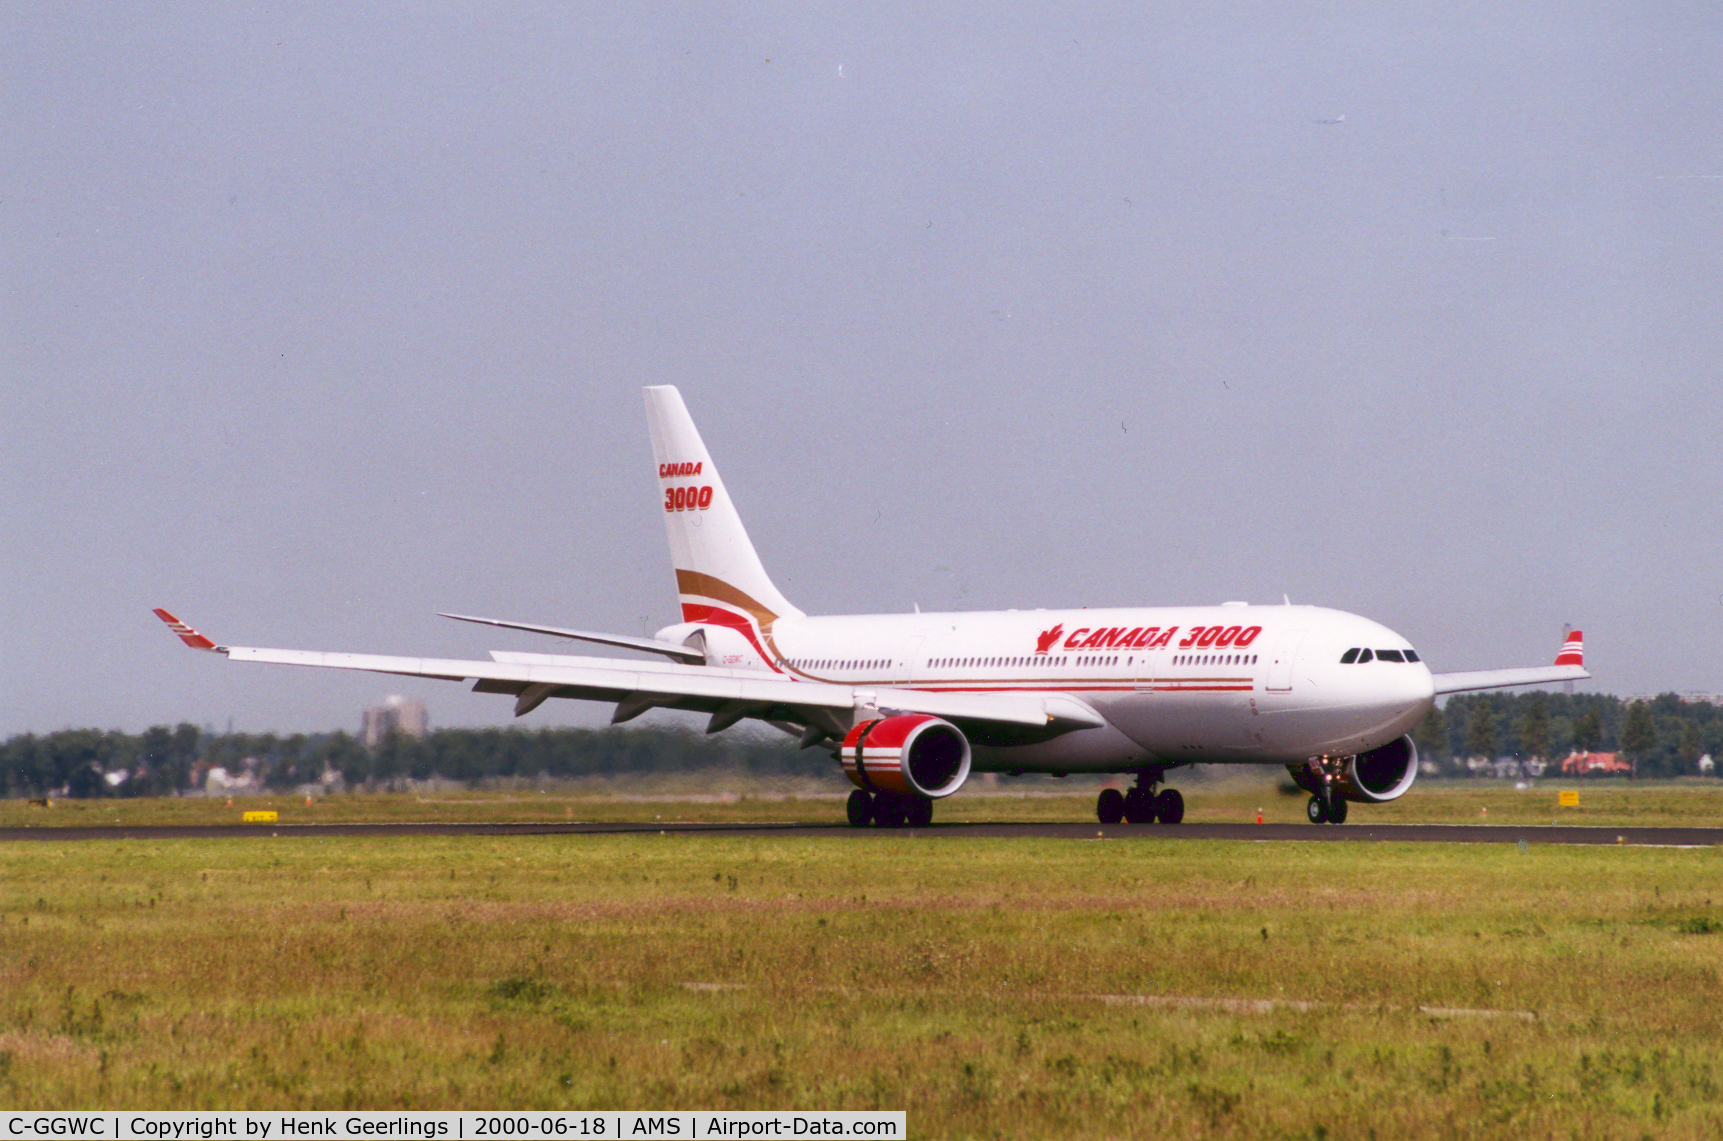 C-GGWC, 1999 Airbus A330-202 C/N 272, Canada 3000